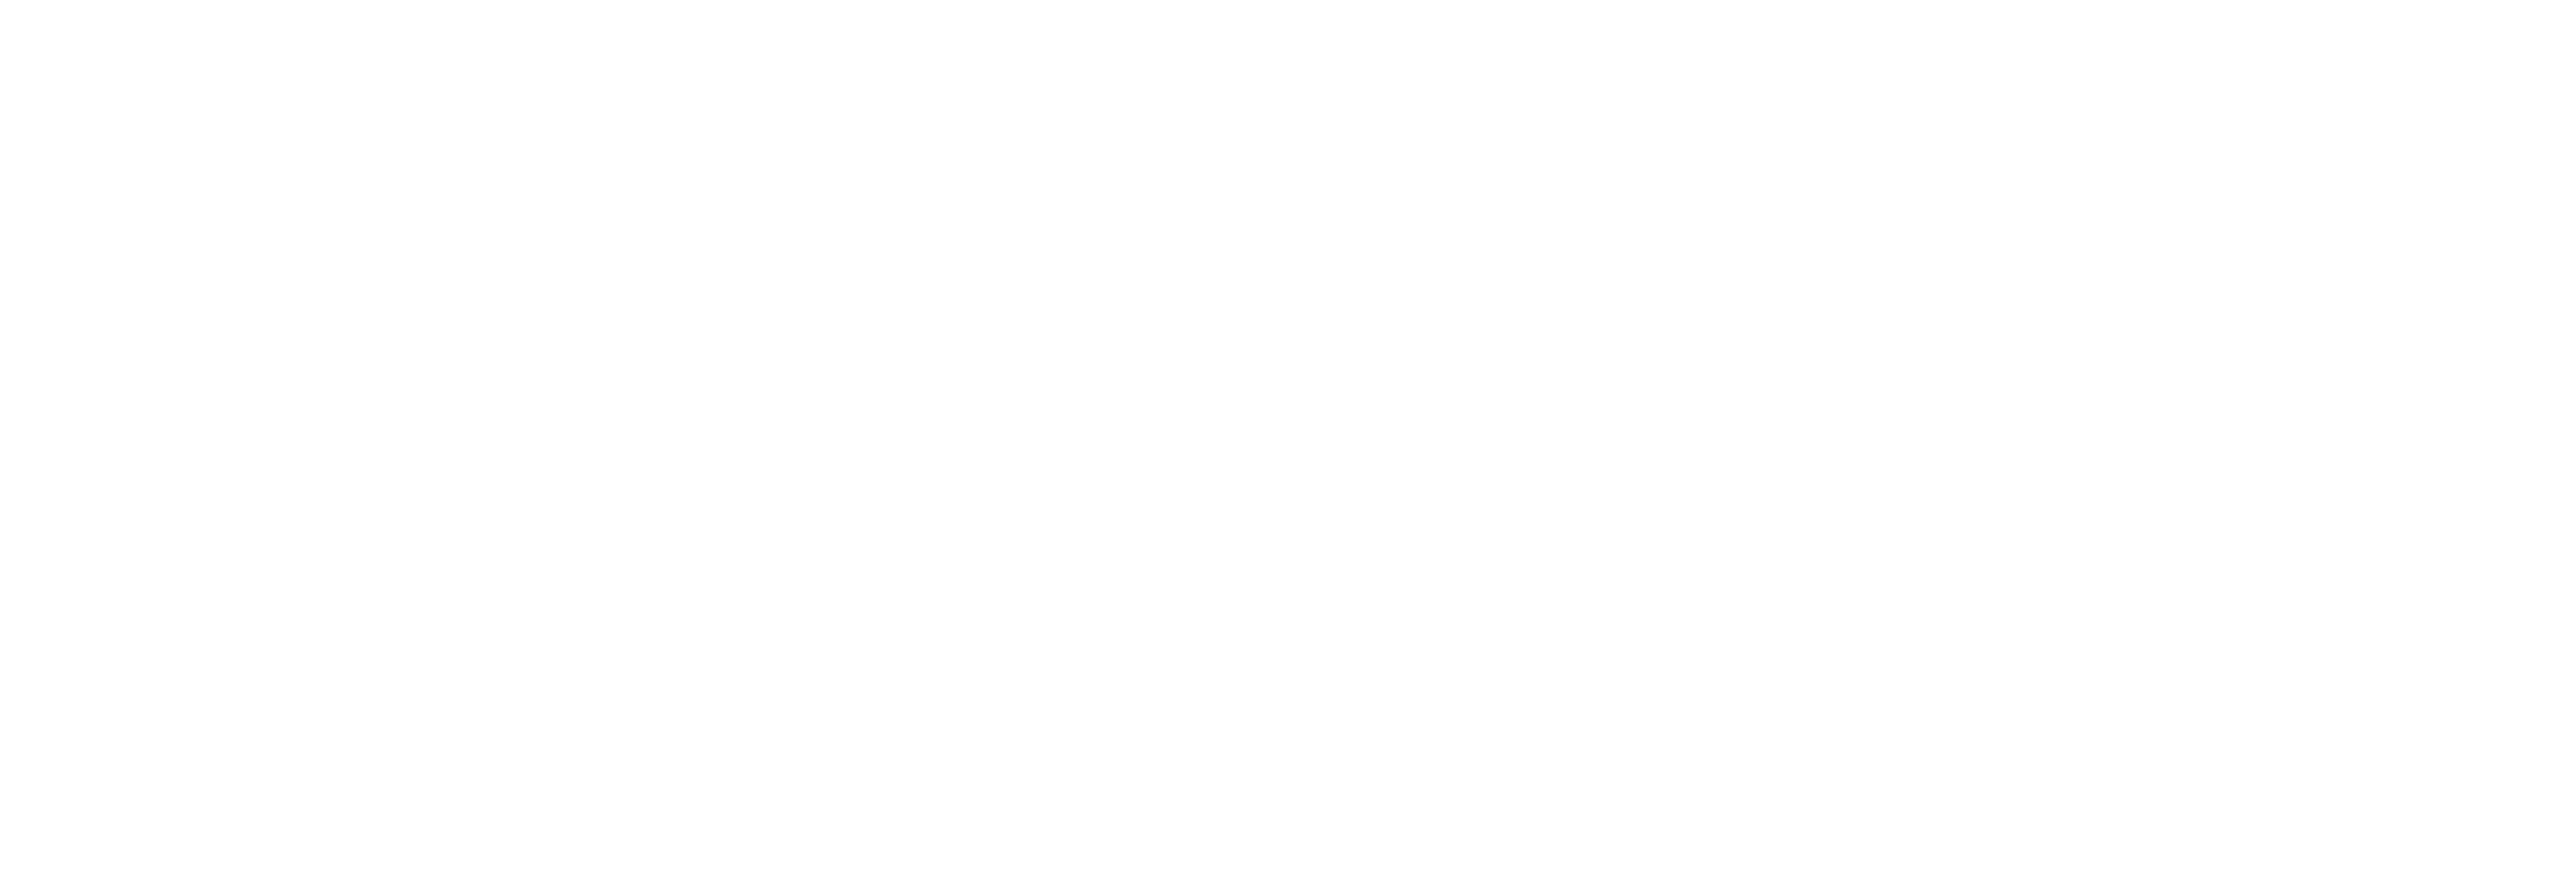 Medisch Centrum voor Dieren - Amsterdam logo